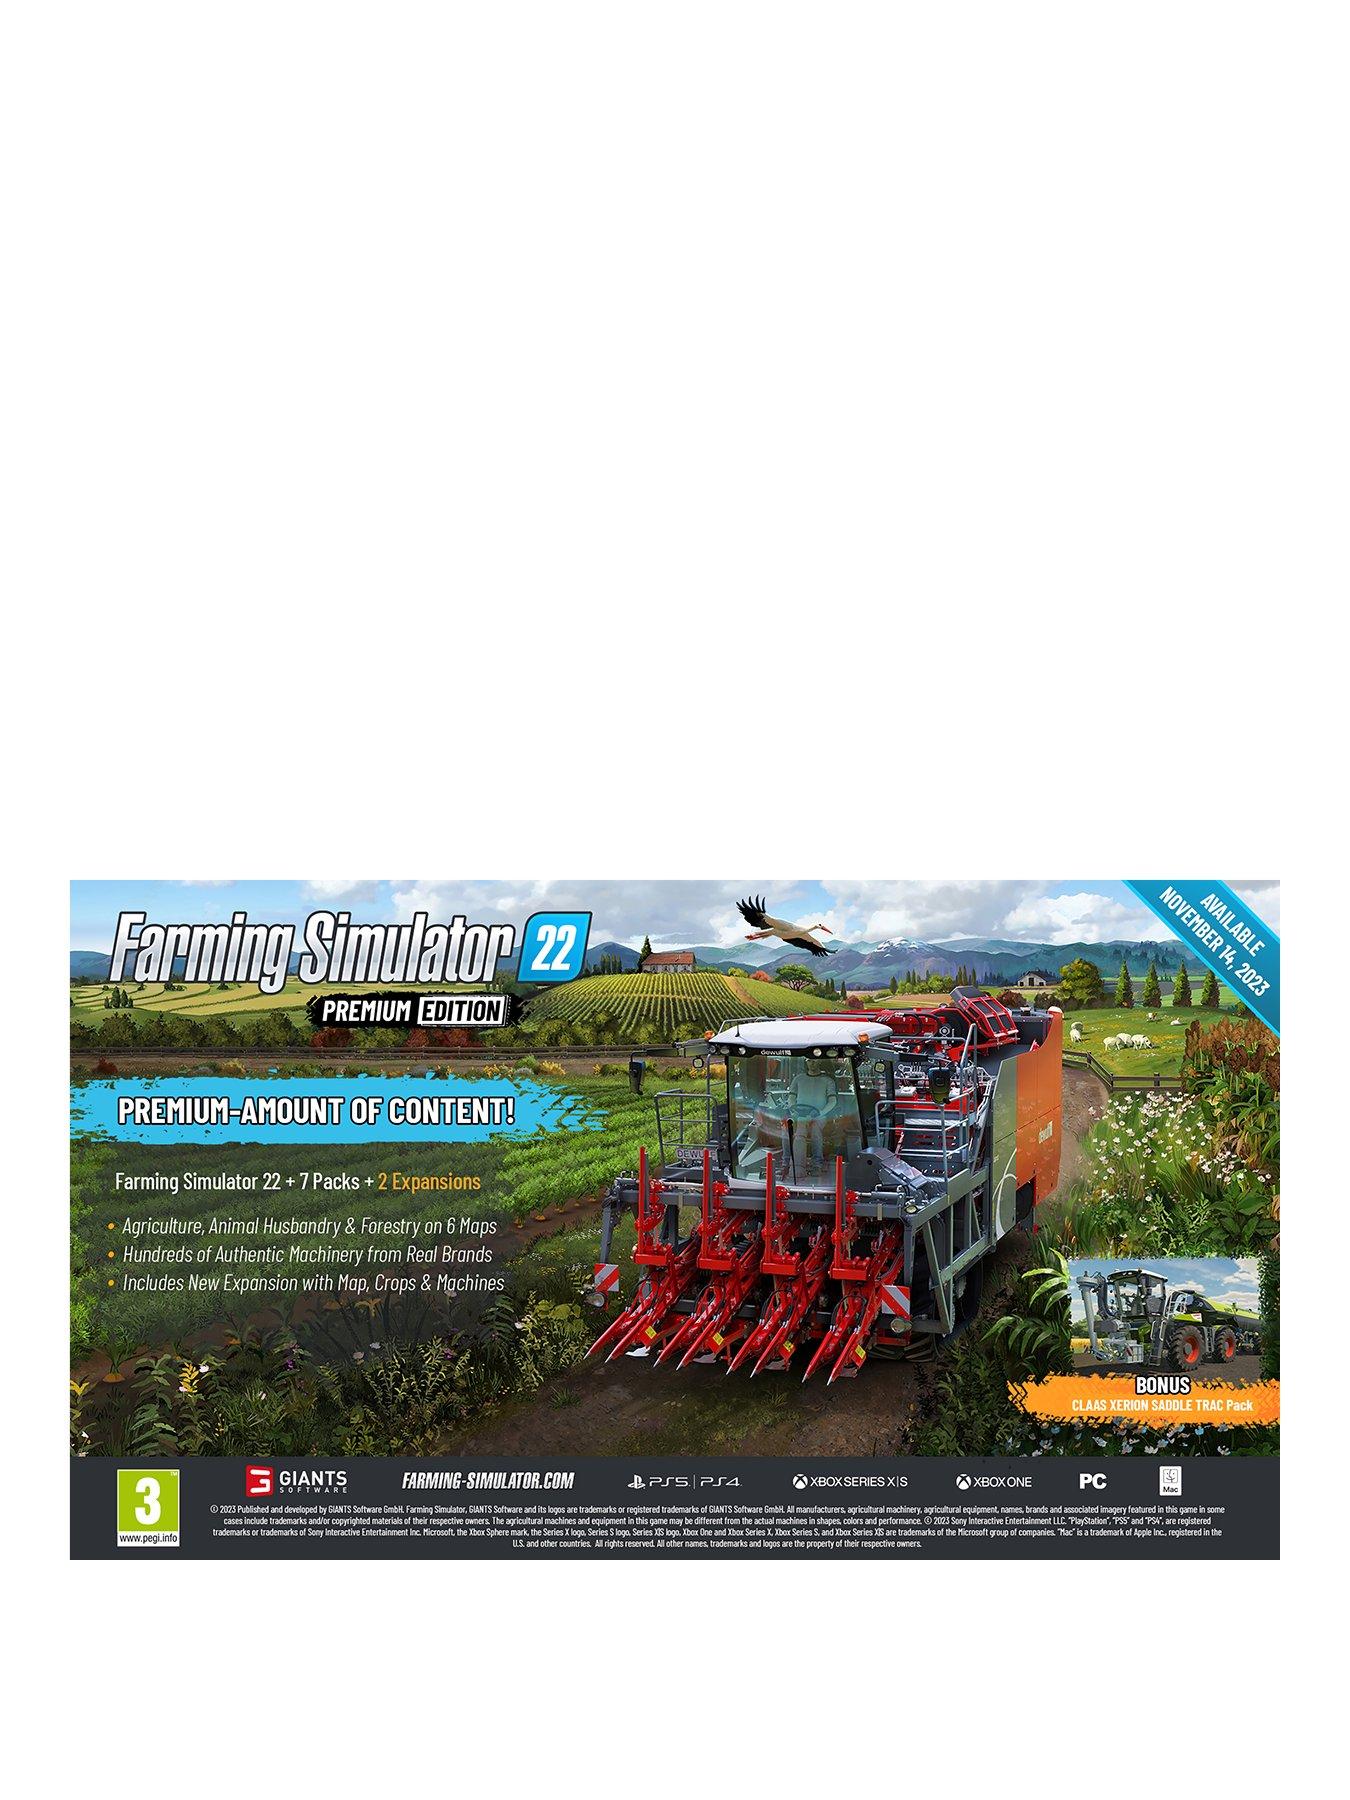 PS4 Landwirtschafts-Simulator 22 LS Day One Edition+2 Bonus Codes